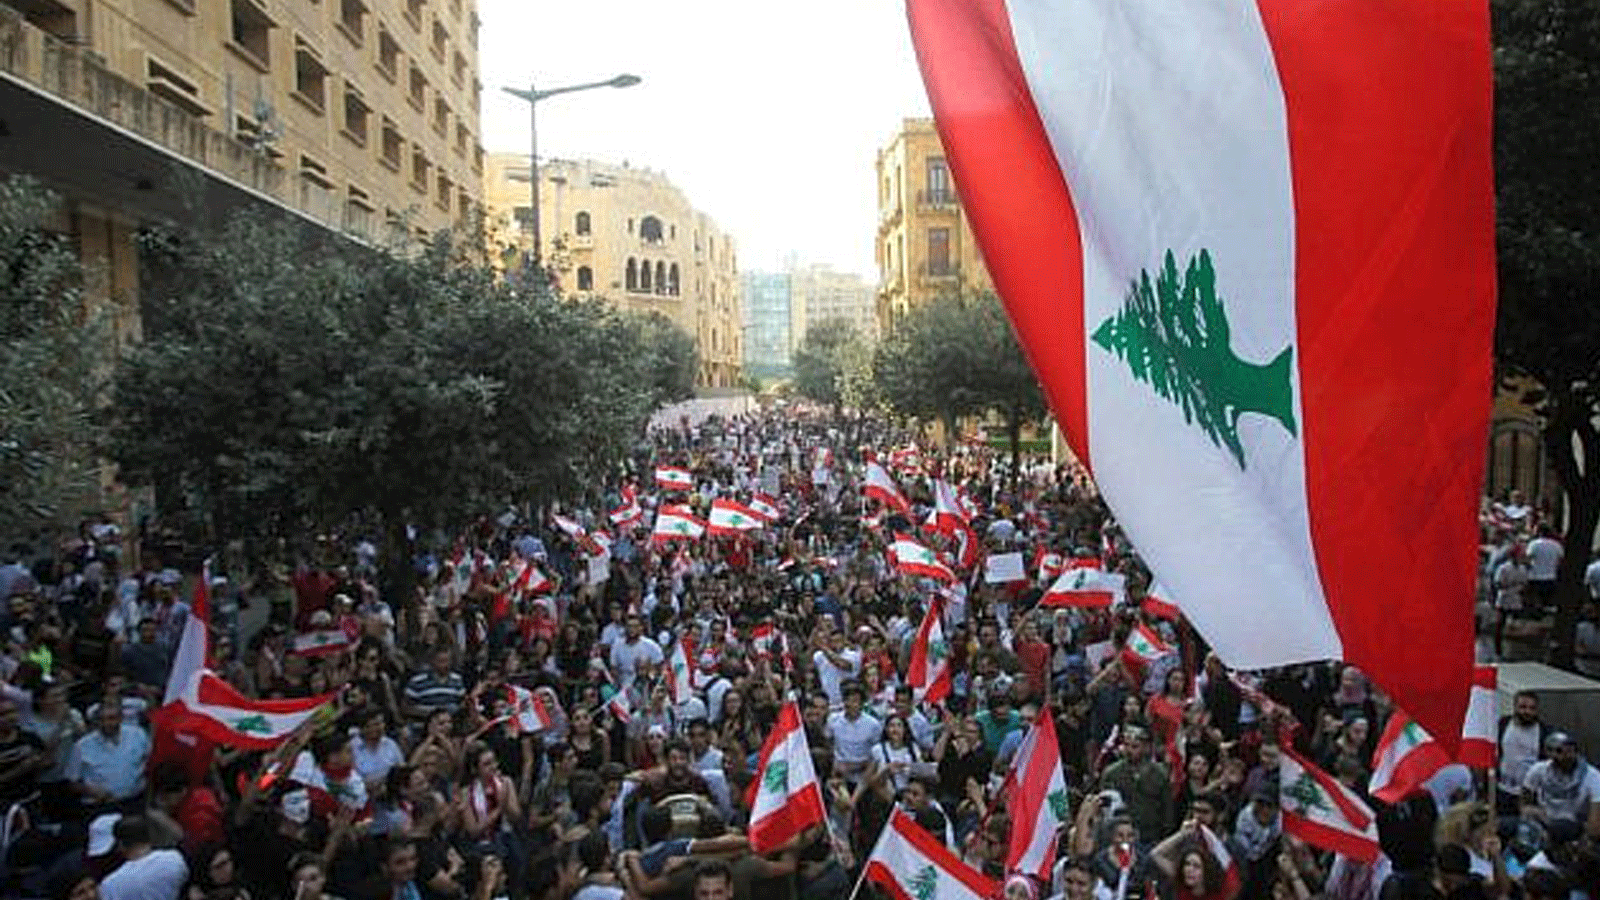 متظاهرون لبنانيون يشاركون في احتجاج على الأوضاع الاقتصادية المتردية في مدينة صيدا جنوب لبنان. 21 تشرين الأول\أكتوبر 2019.